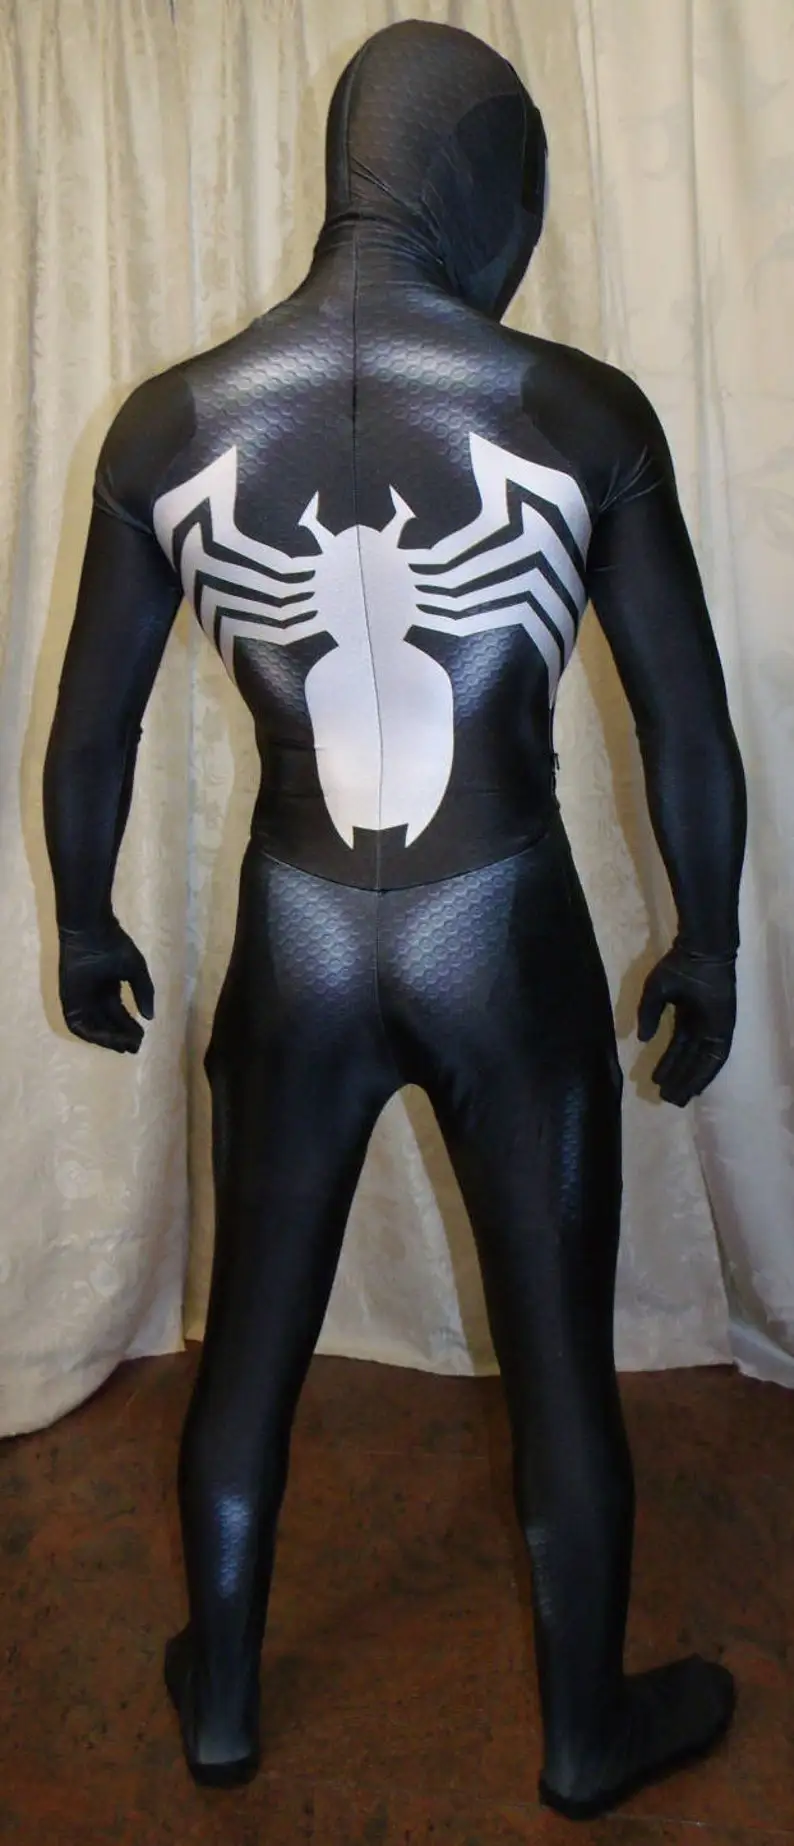 Хэллоуин Взрослые Дети Черный Костюм Venom Symbiote 2 Человек-паук Супергерой Косплей Зентаи Мужчины Мальчики Мужской Боди Праздничный комбинезон - 1